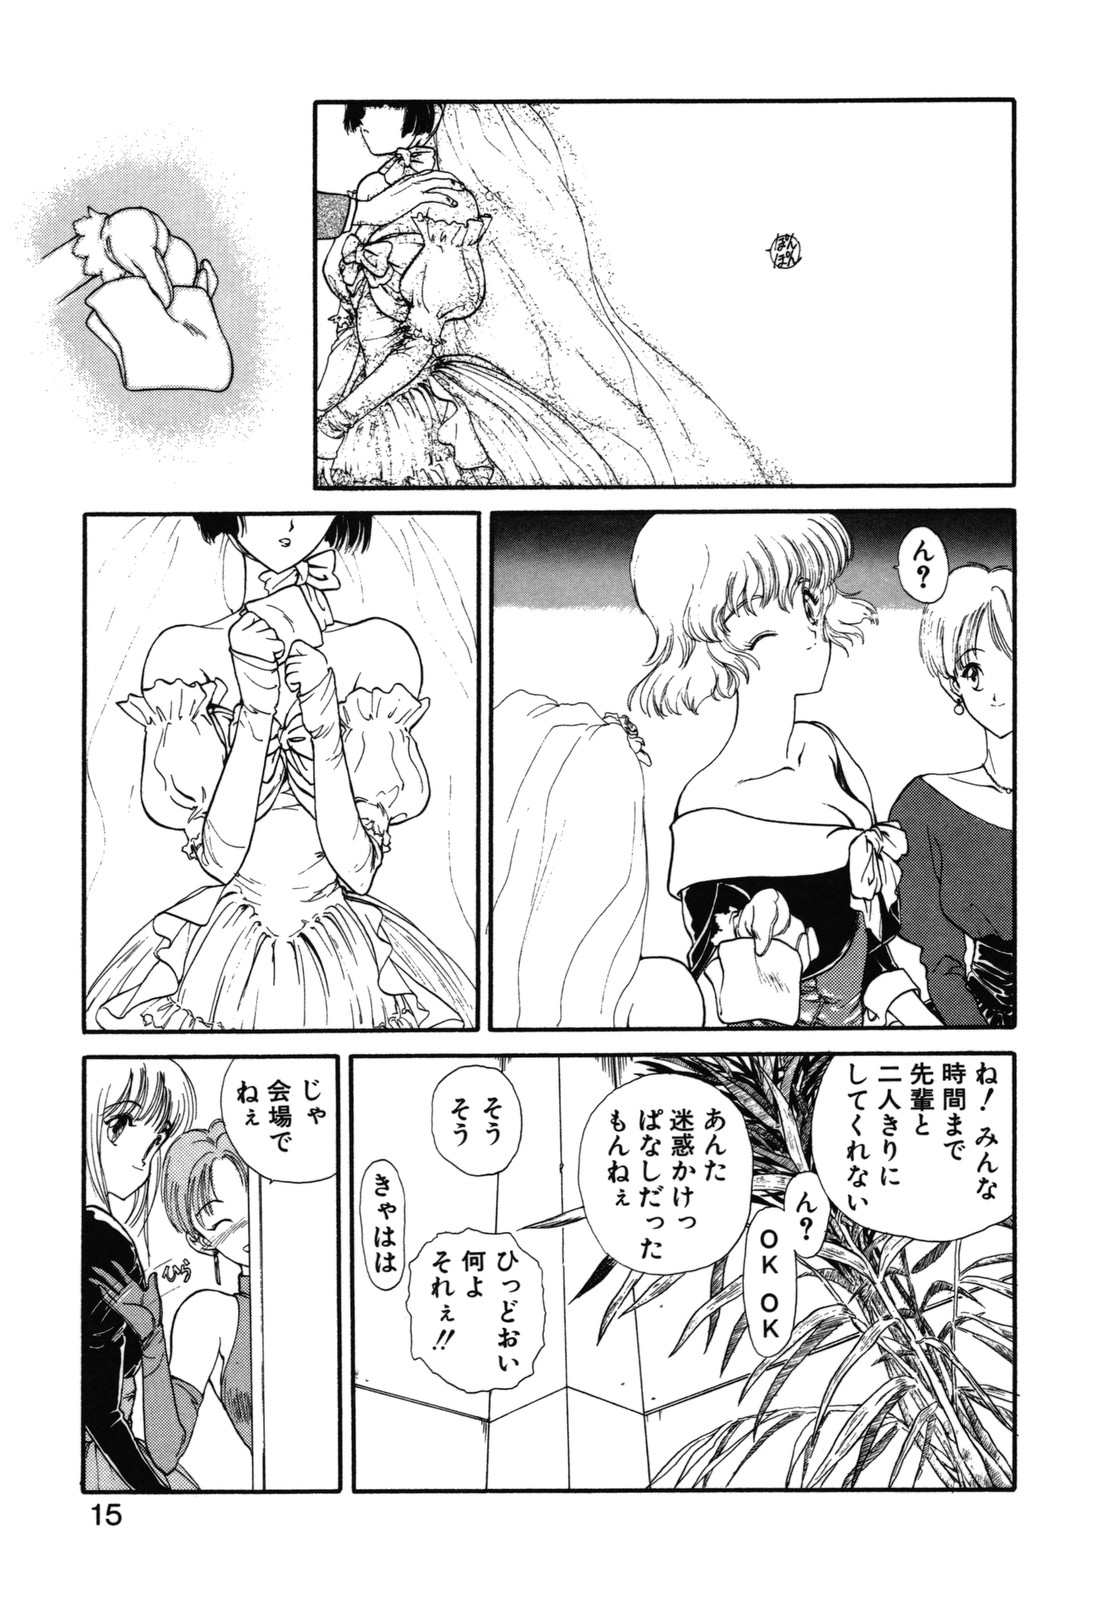 [Utatane Hiroyuki] COUNT DOWN page 16 full